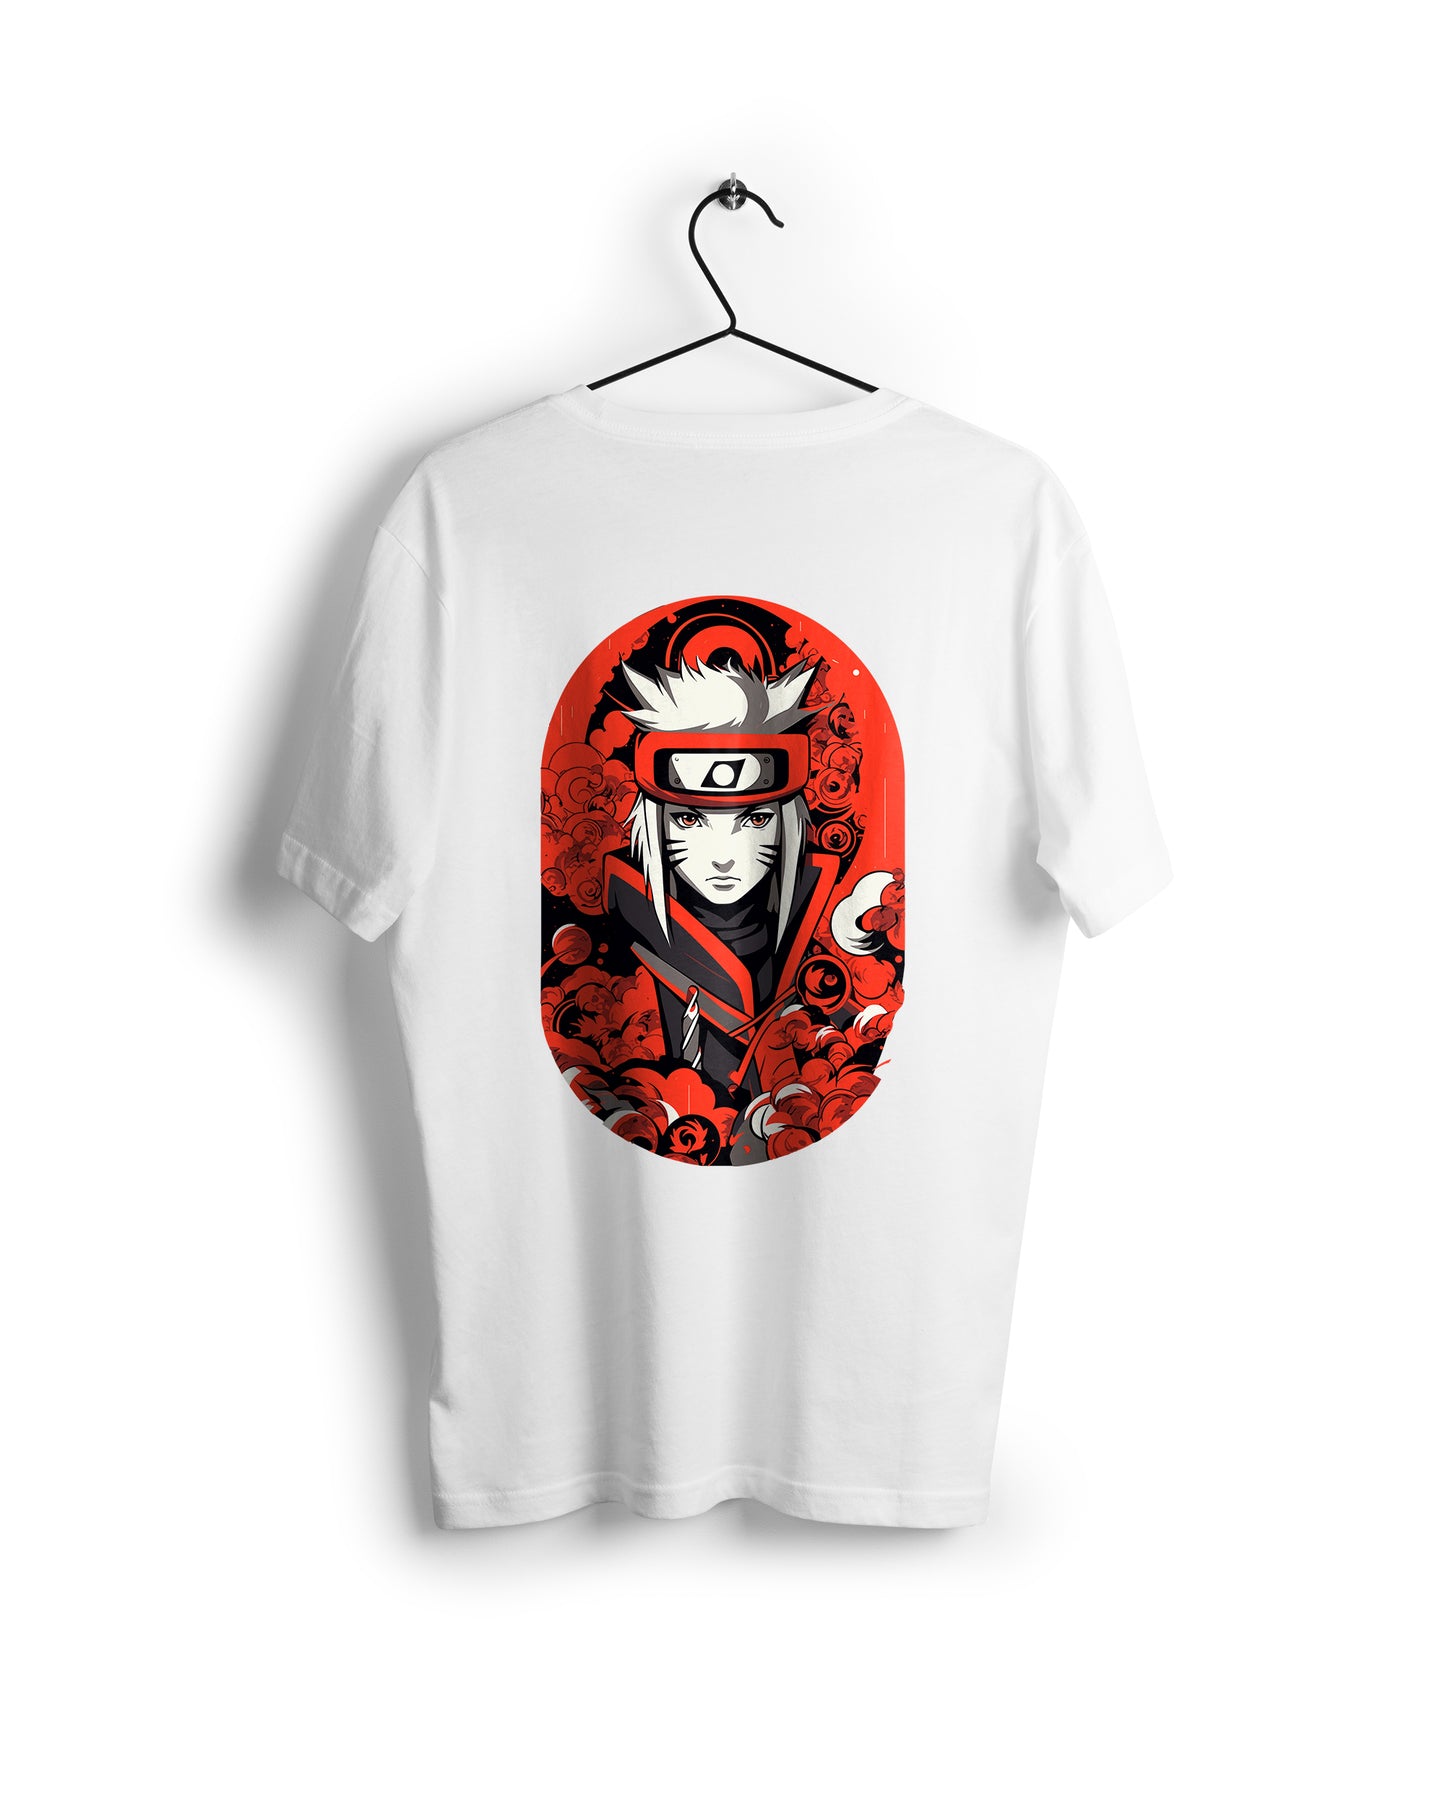 Red & White Naruto Monochrome Tee: Cristina McAllister-Inspired Design - Digital Graphics Basic T-shirt White